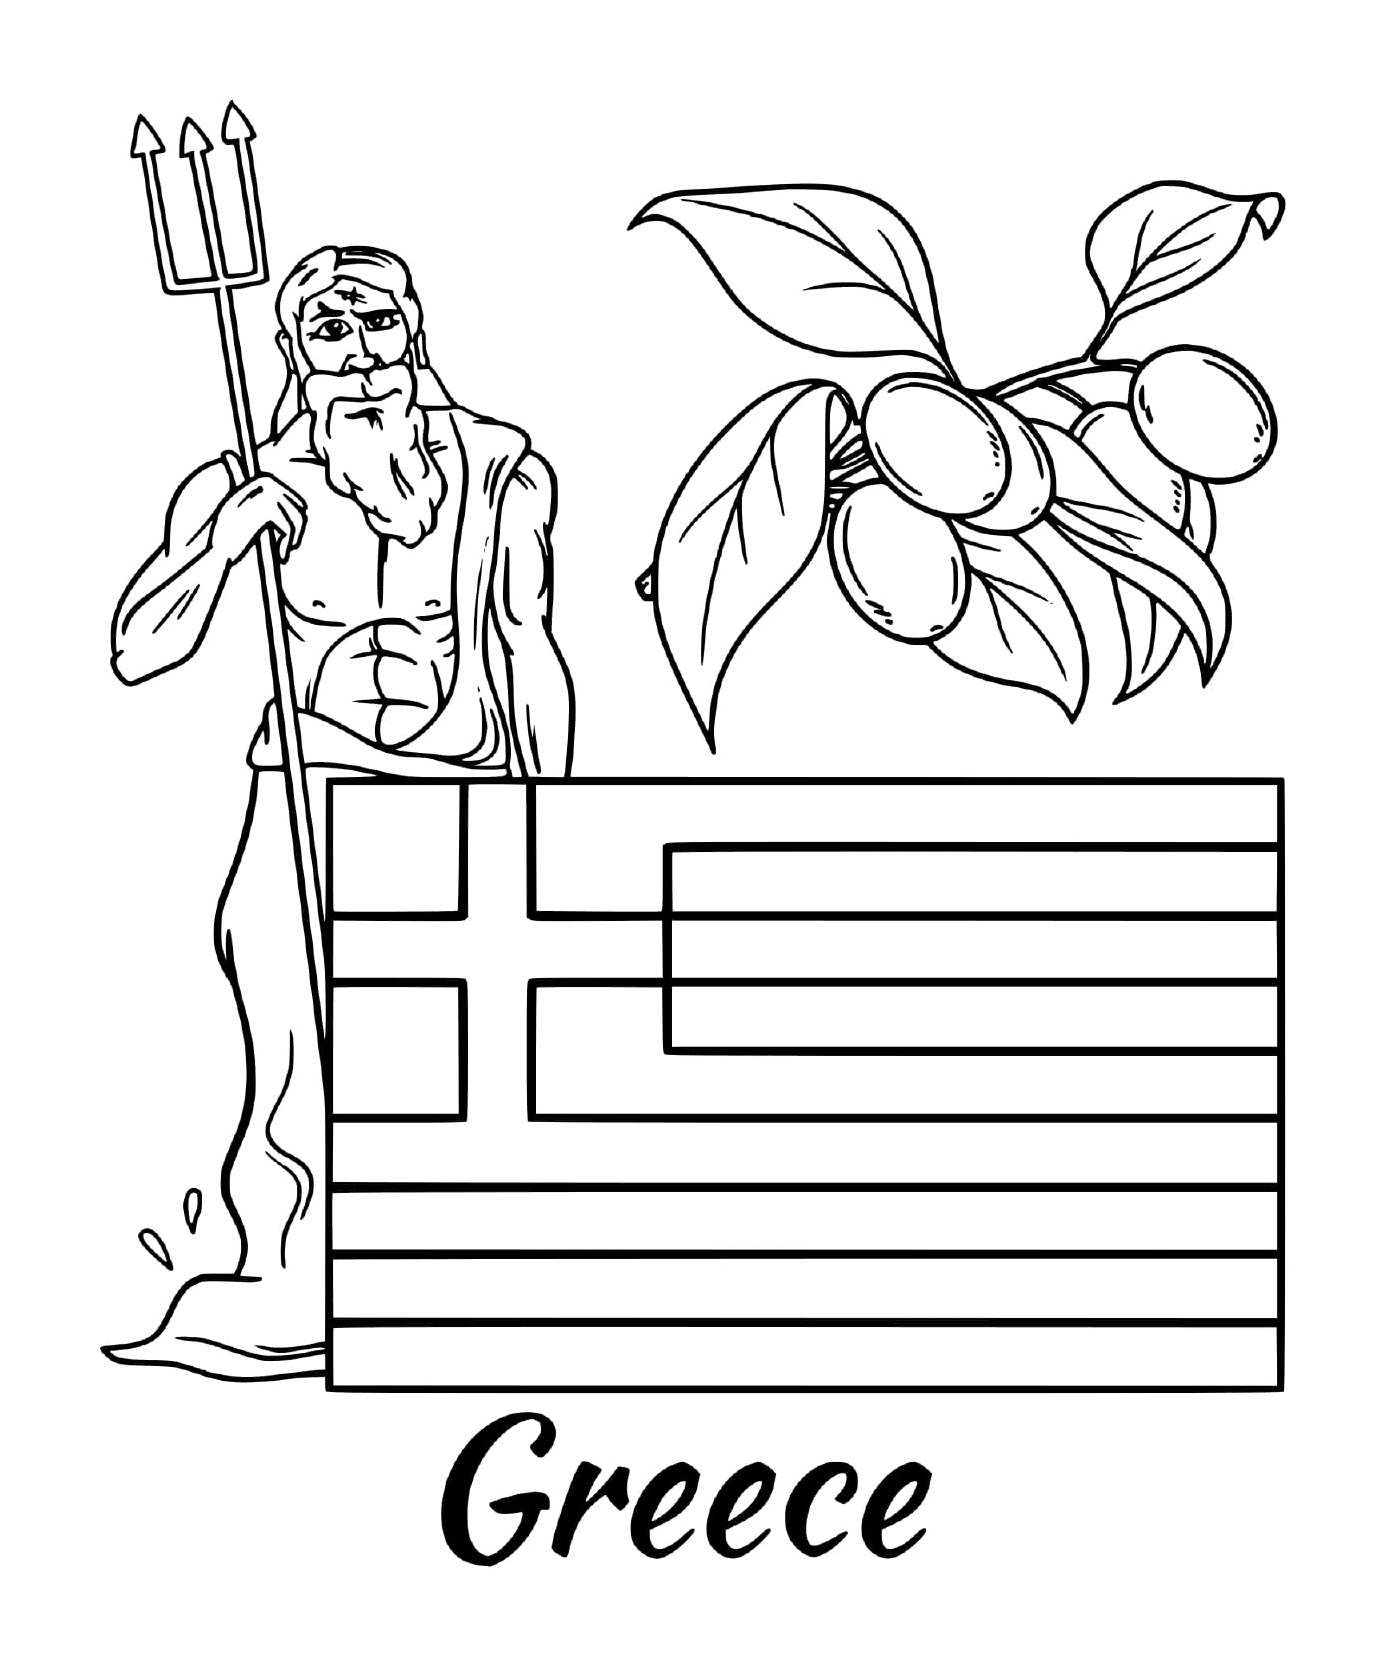  Bandiera della Grecia con Zeus 